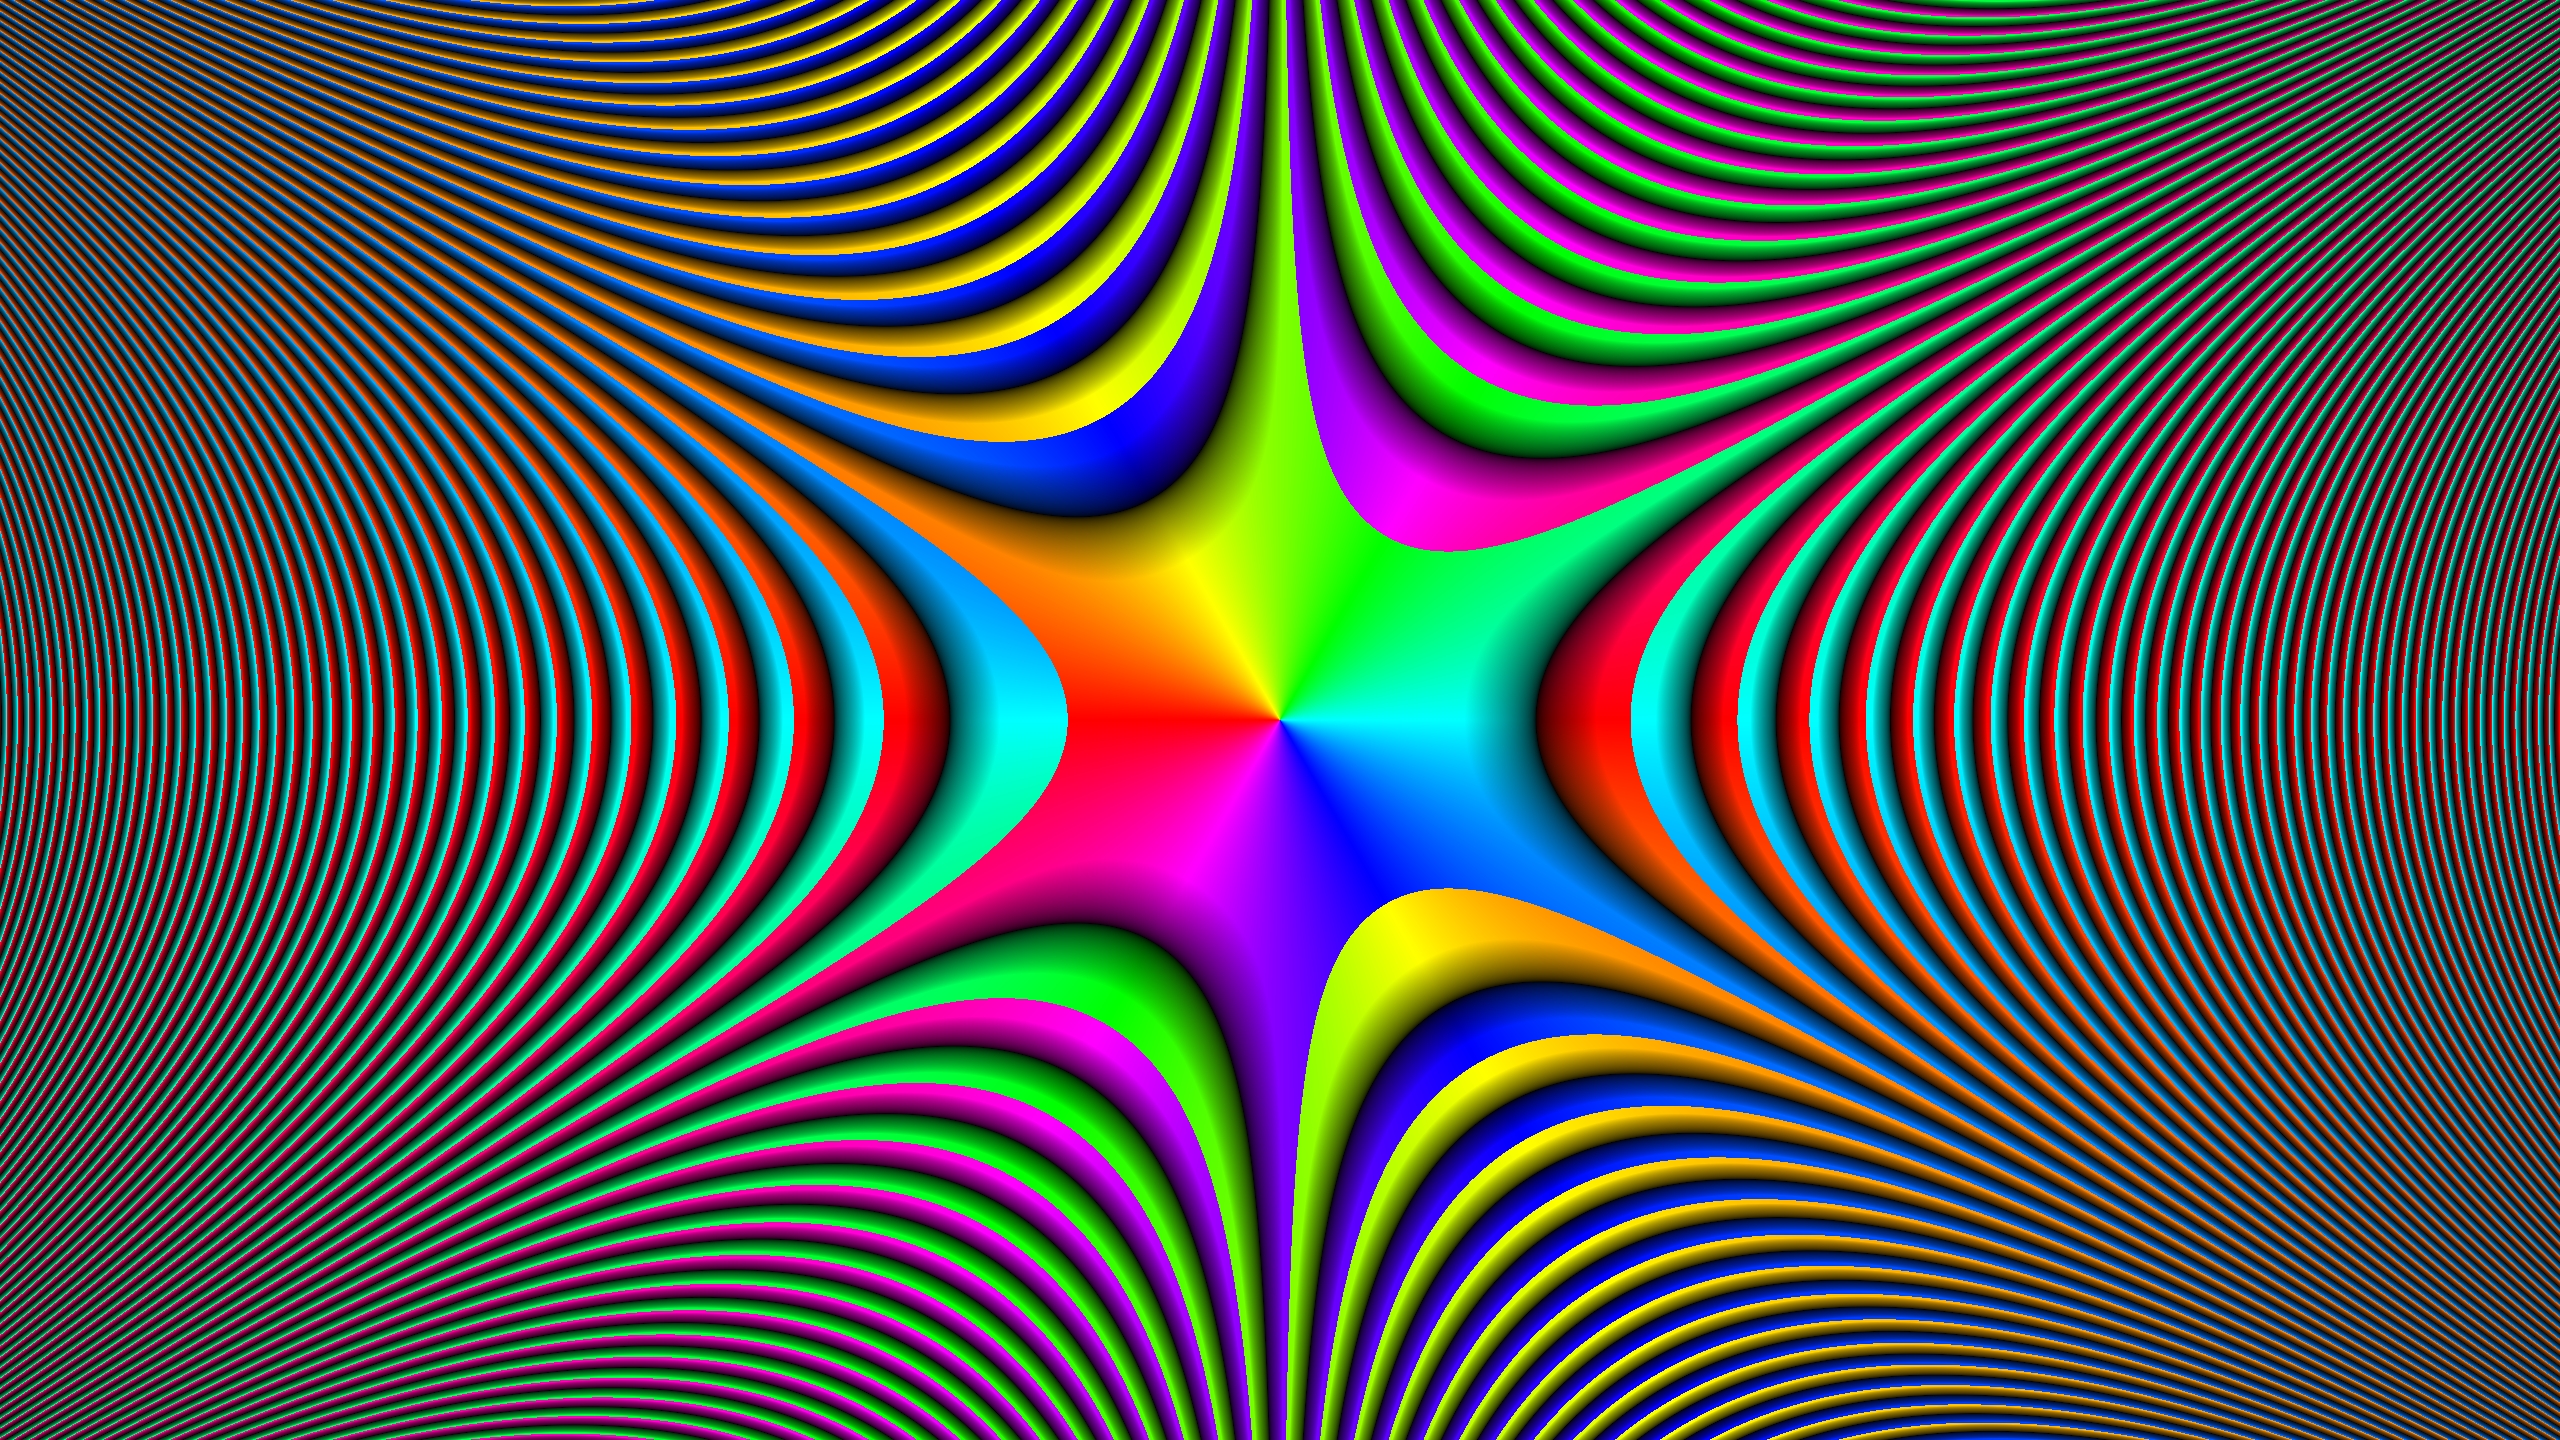 illusione ottica wallpaper hd,arte frattale,arte psichedelica,linea,modello,simmetria